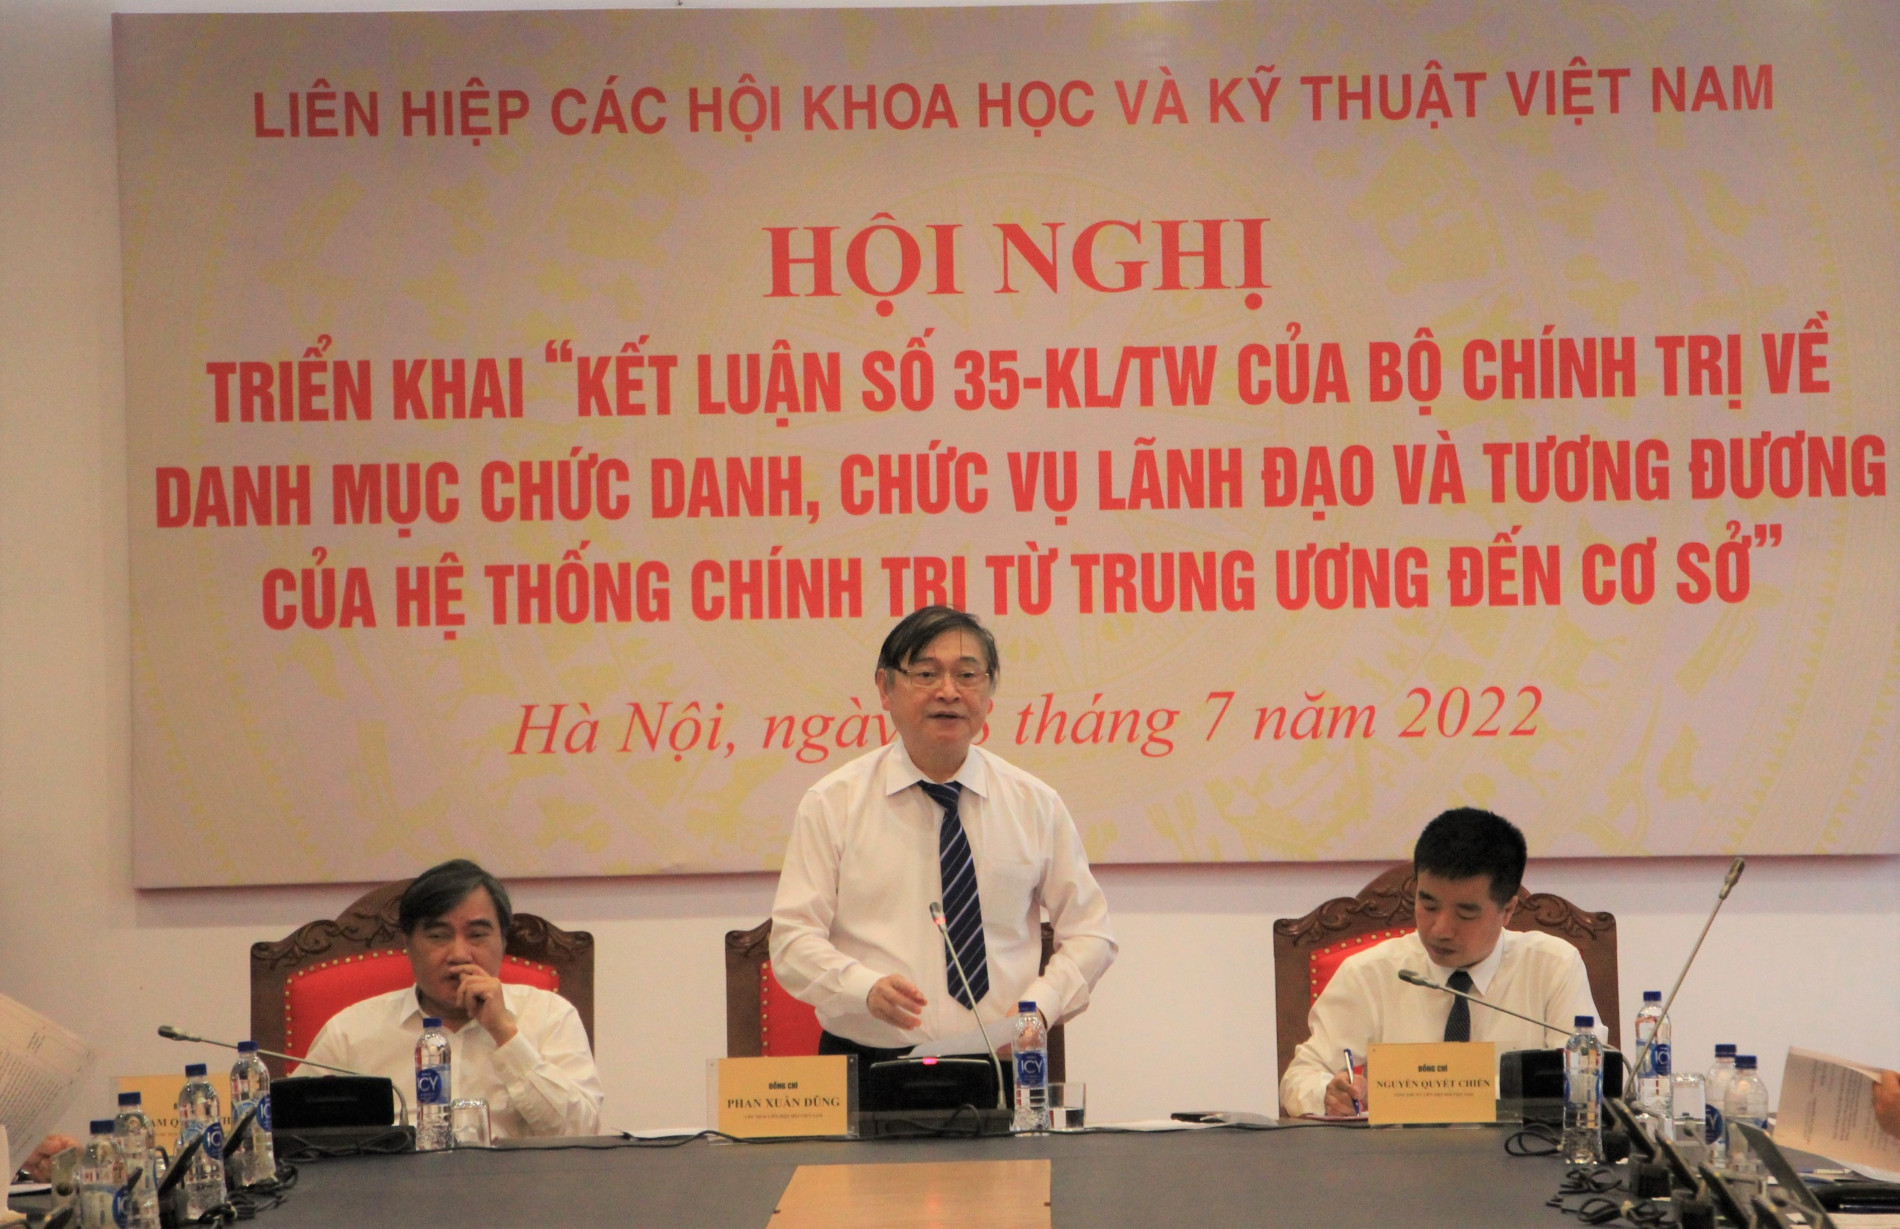 Đồng chí Phan Xuân Dũng, Bí thư Đảng đoàn, Chủ tịch LHHVN phát biểu khai mạc